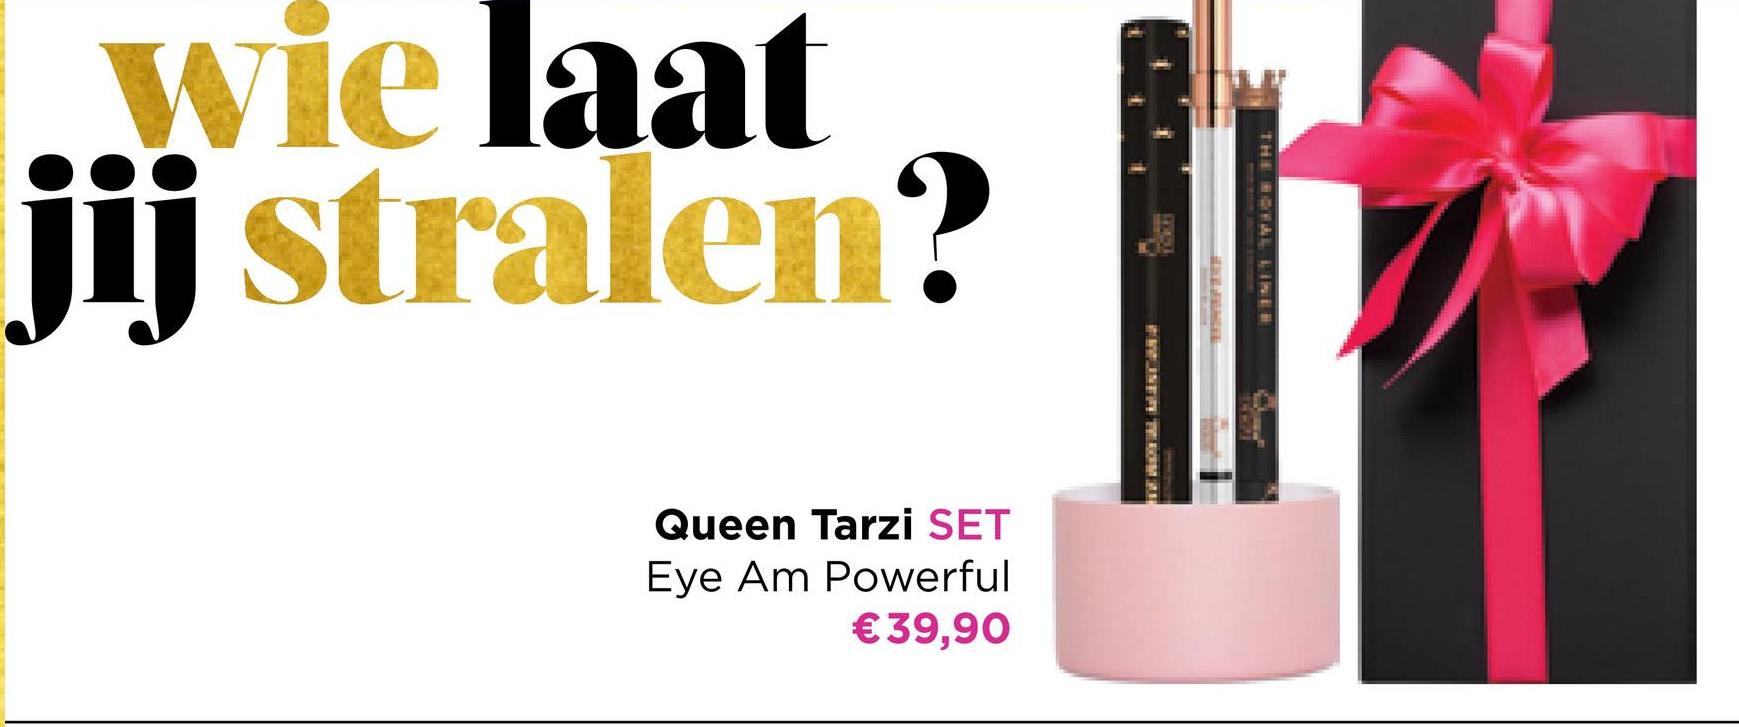 wie laat
jij stralen?
Queen Tarzi SET
Eye Am Powerful
€39,90